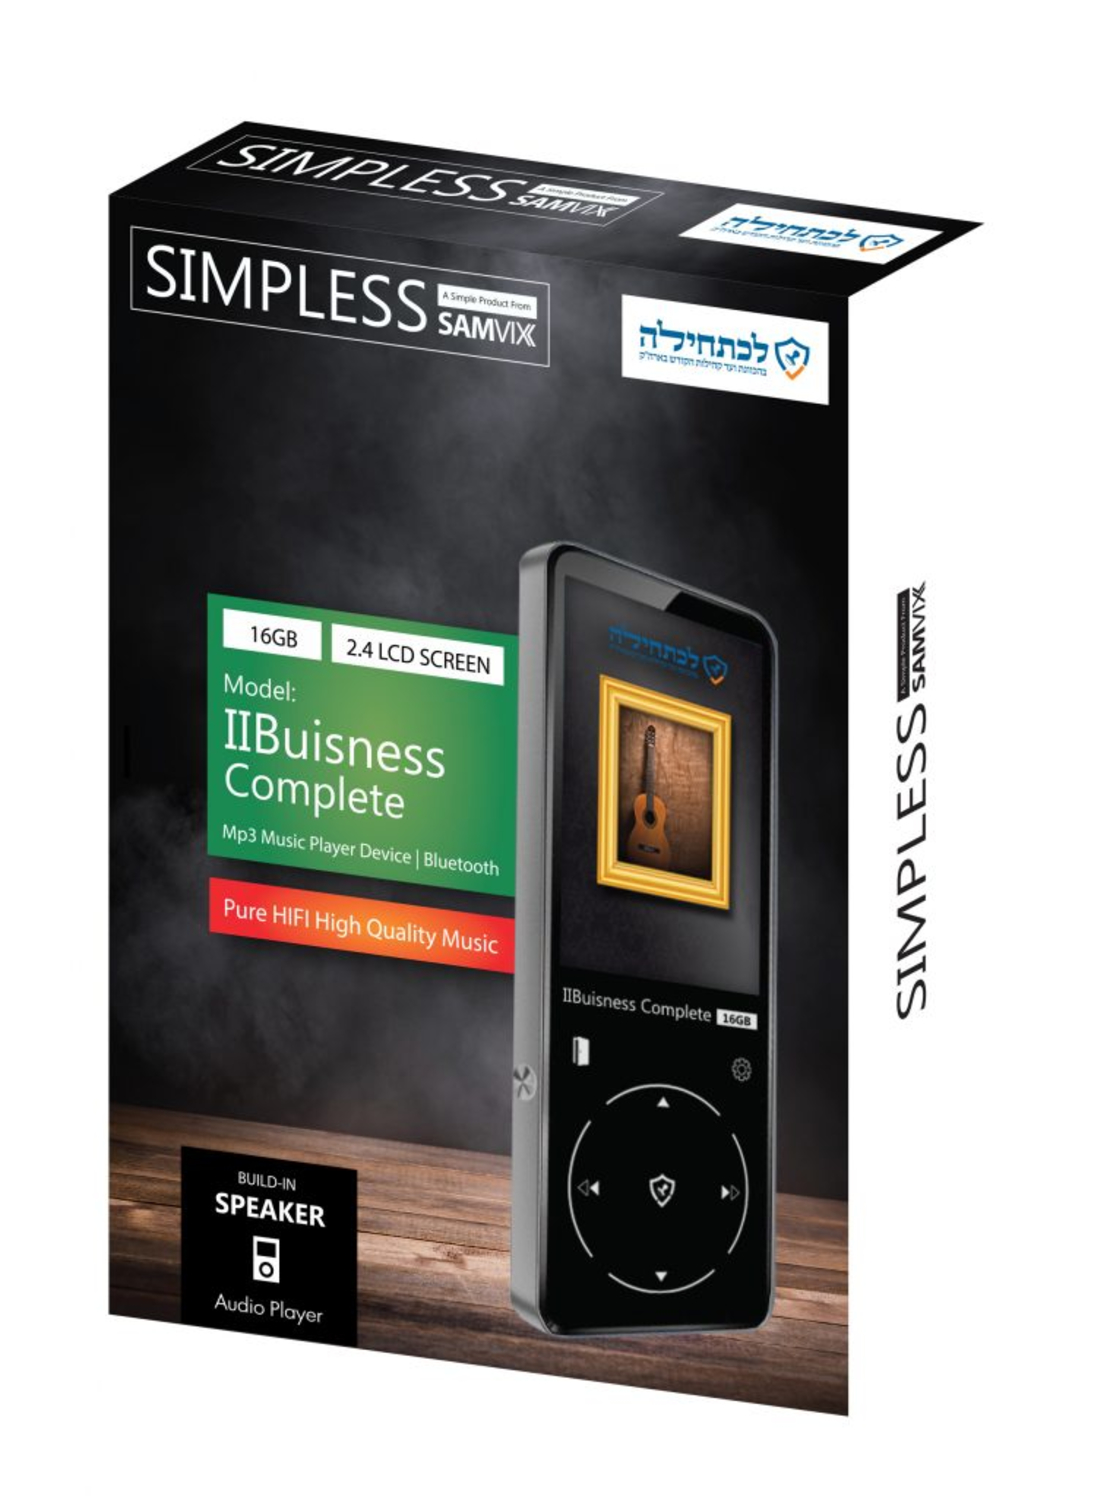 נגן MP3 ביזנס קומפליט 8GB סאמויקס | Samvix BUSINESS COMPLETE 8GB